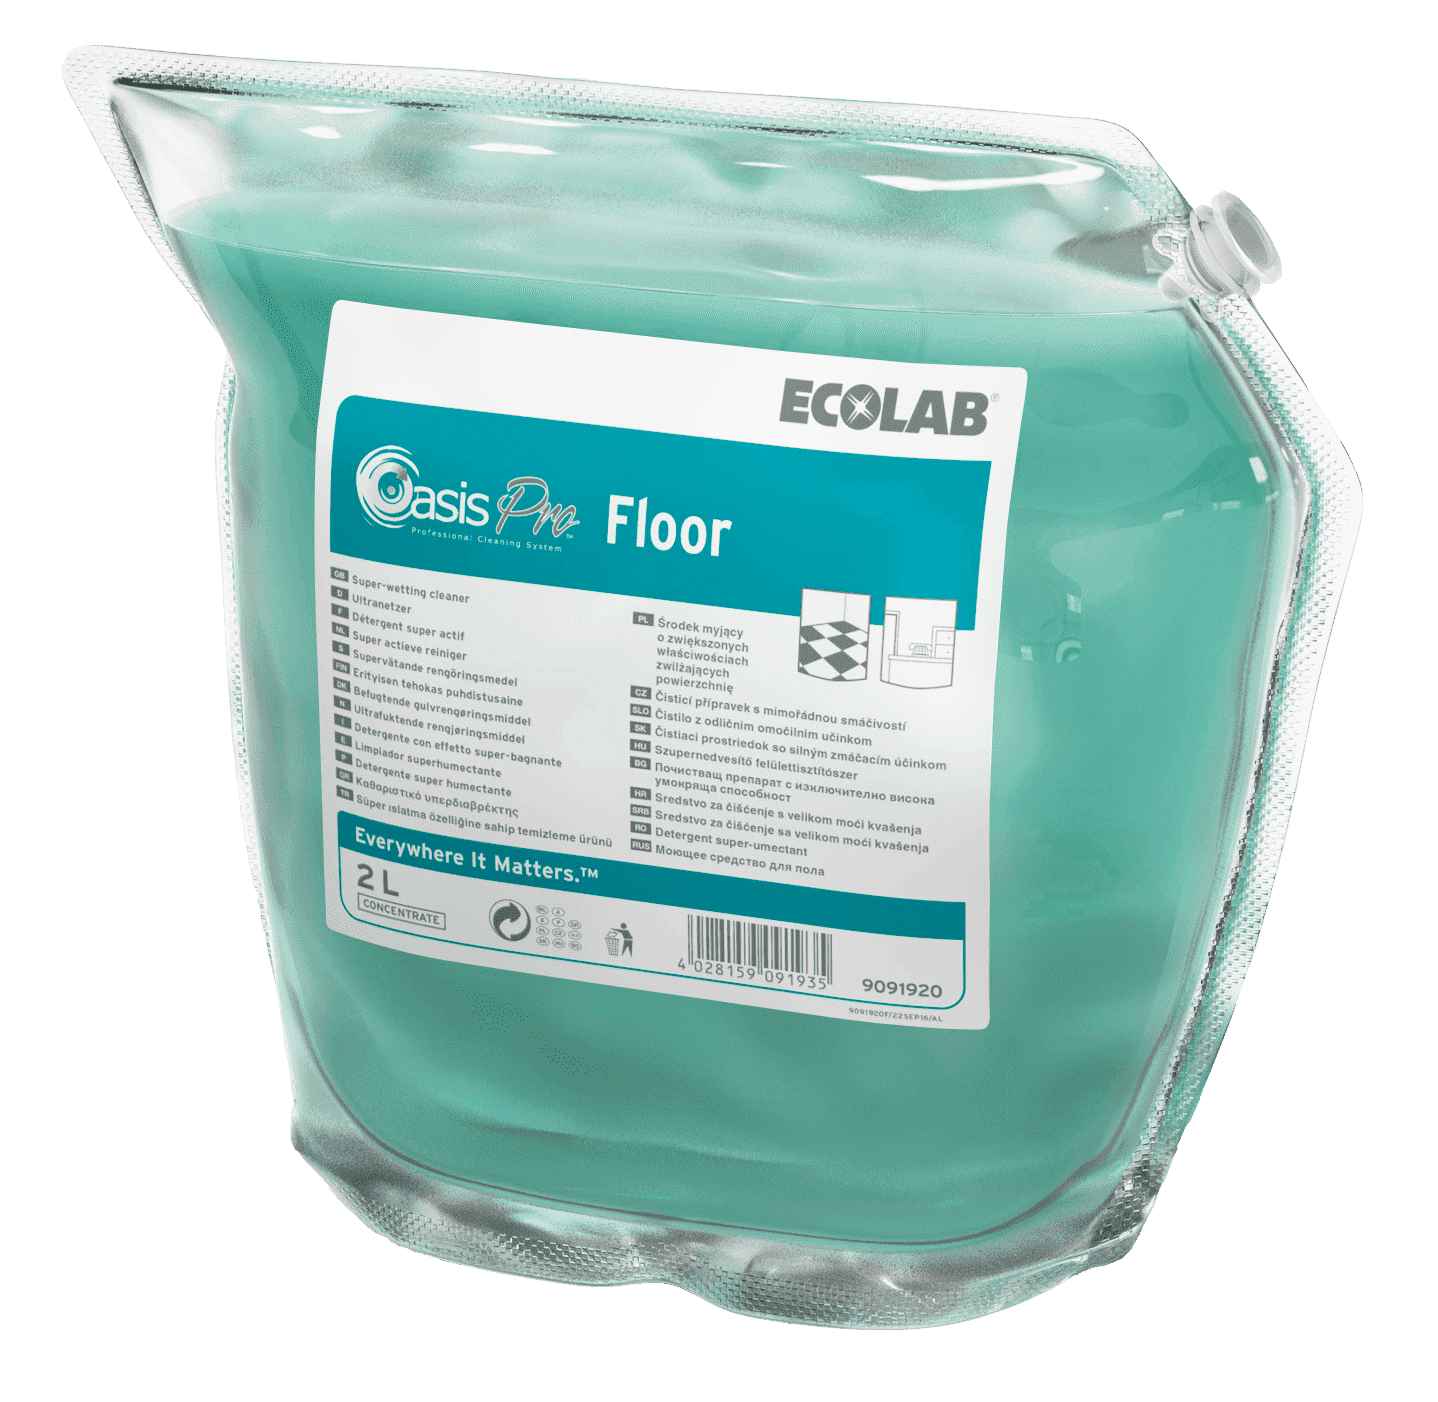 Ecolab Oasis Pro Floor концентрированное моющее средство для ежедневной уборки твердых полов